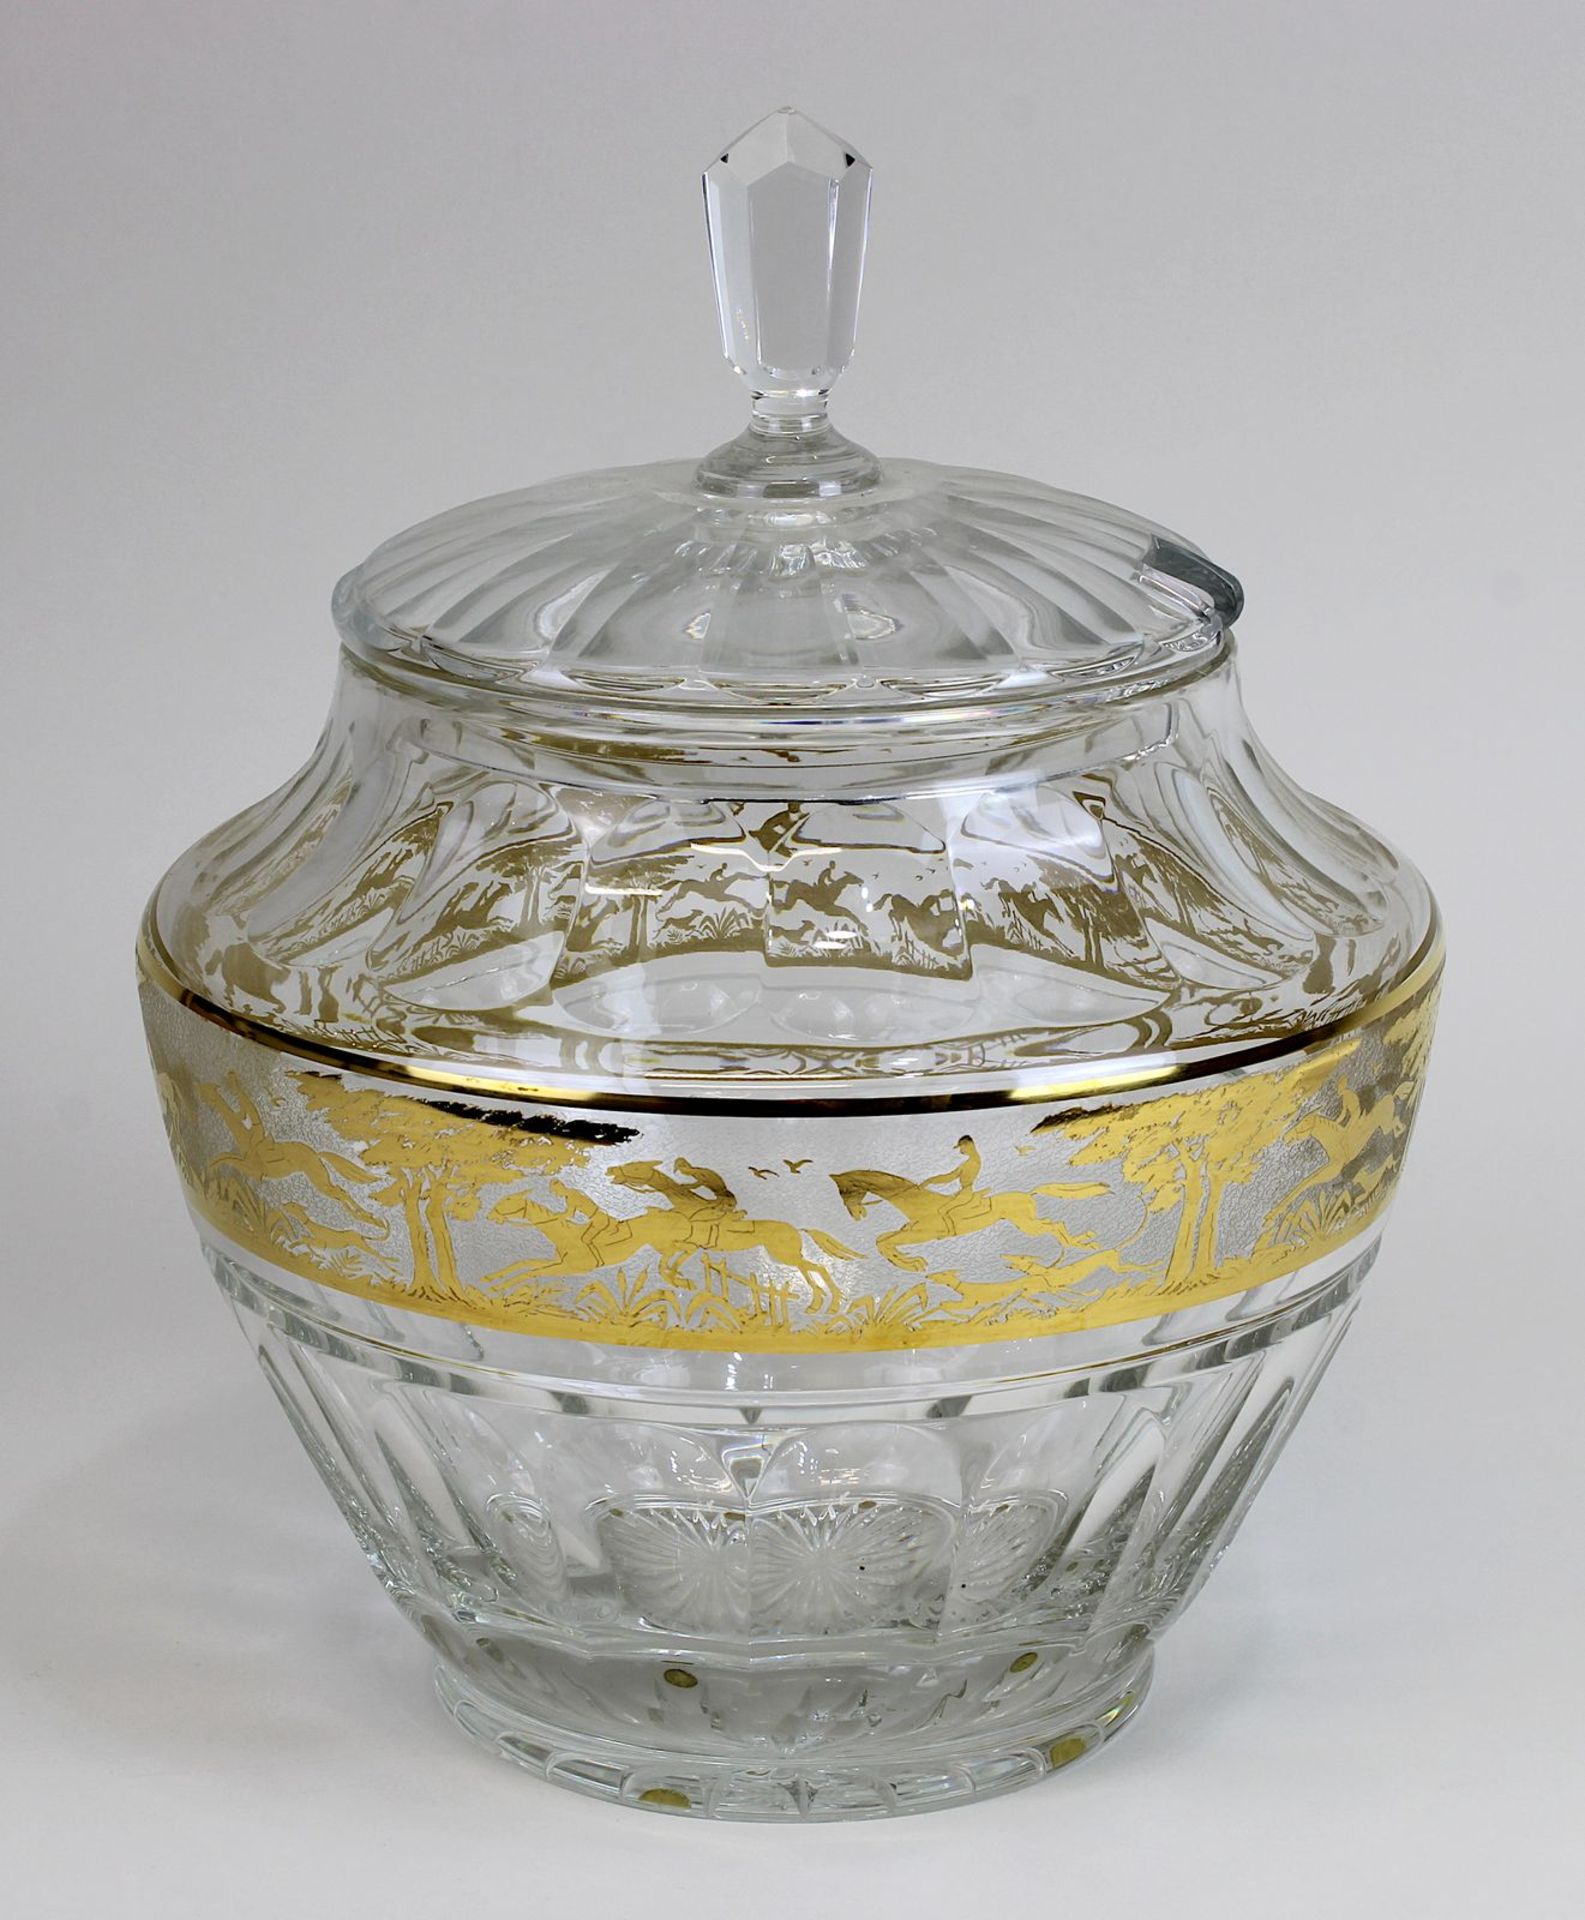 Glasbowle, 2. H. 20. Jh., geschliffene Wandung, mit geätztem vergoldeten Fries mit Reitern u.